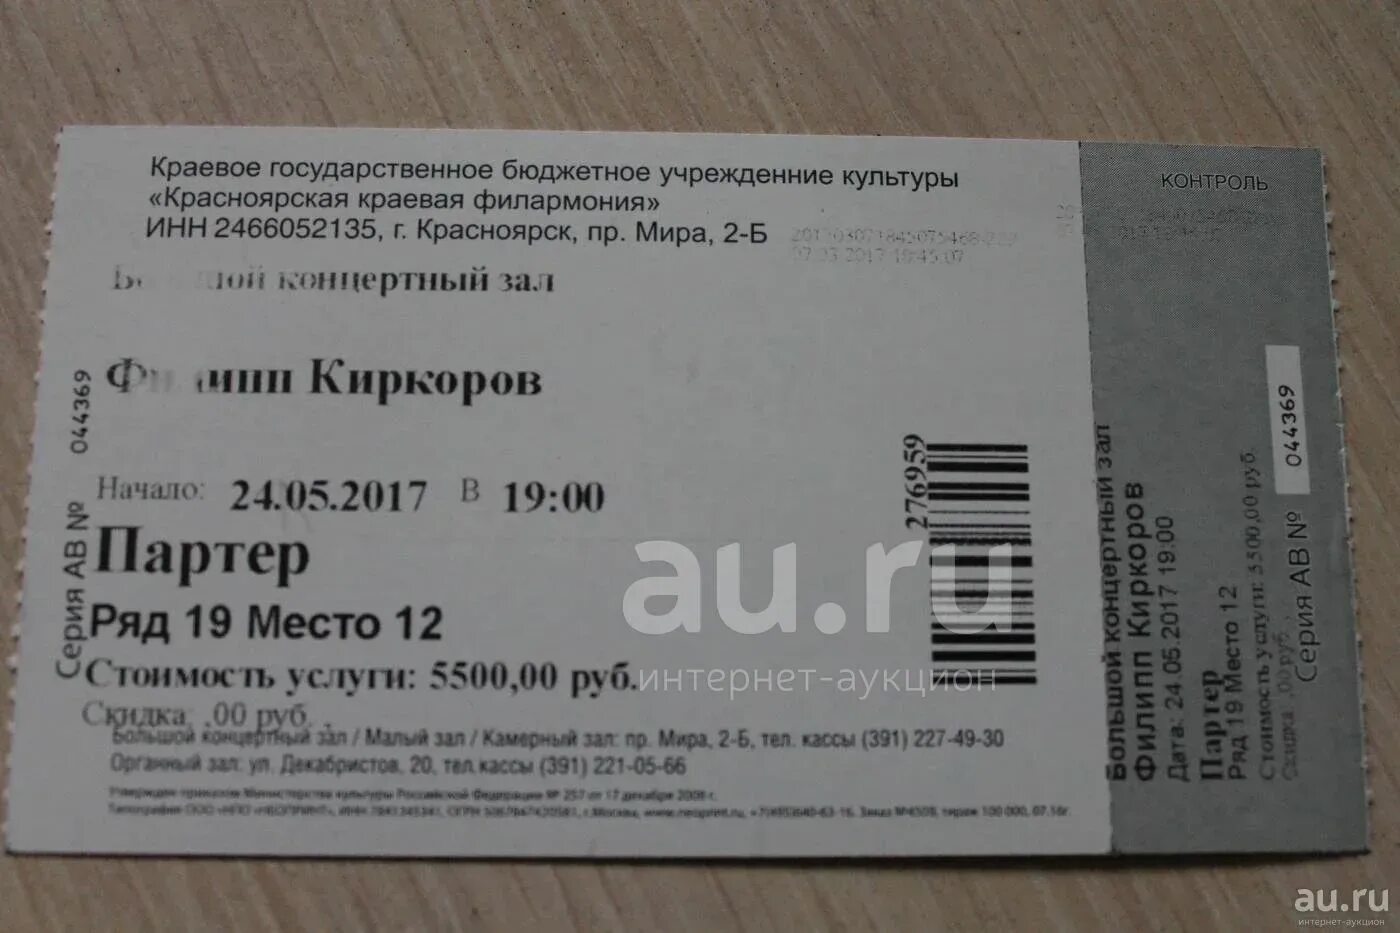 Звери москва 2023 купить билет. Билет на концерт. Билеты на концерт в подарок. Билет на концерт Киркорова. Олимпийский билеты на концерты.